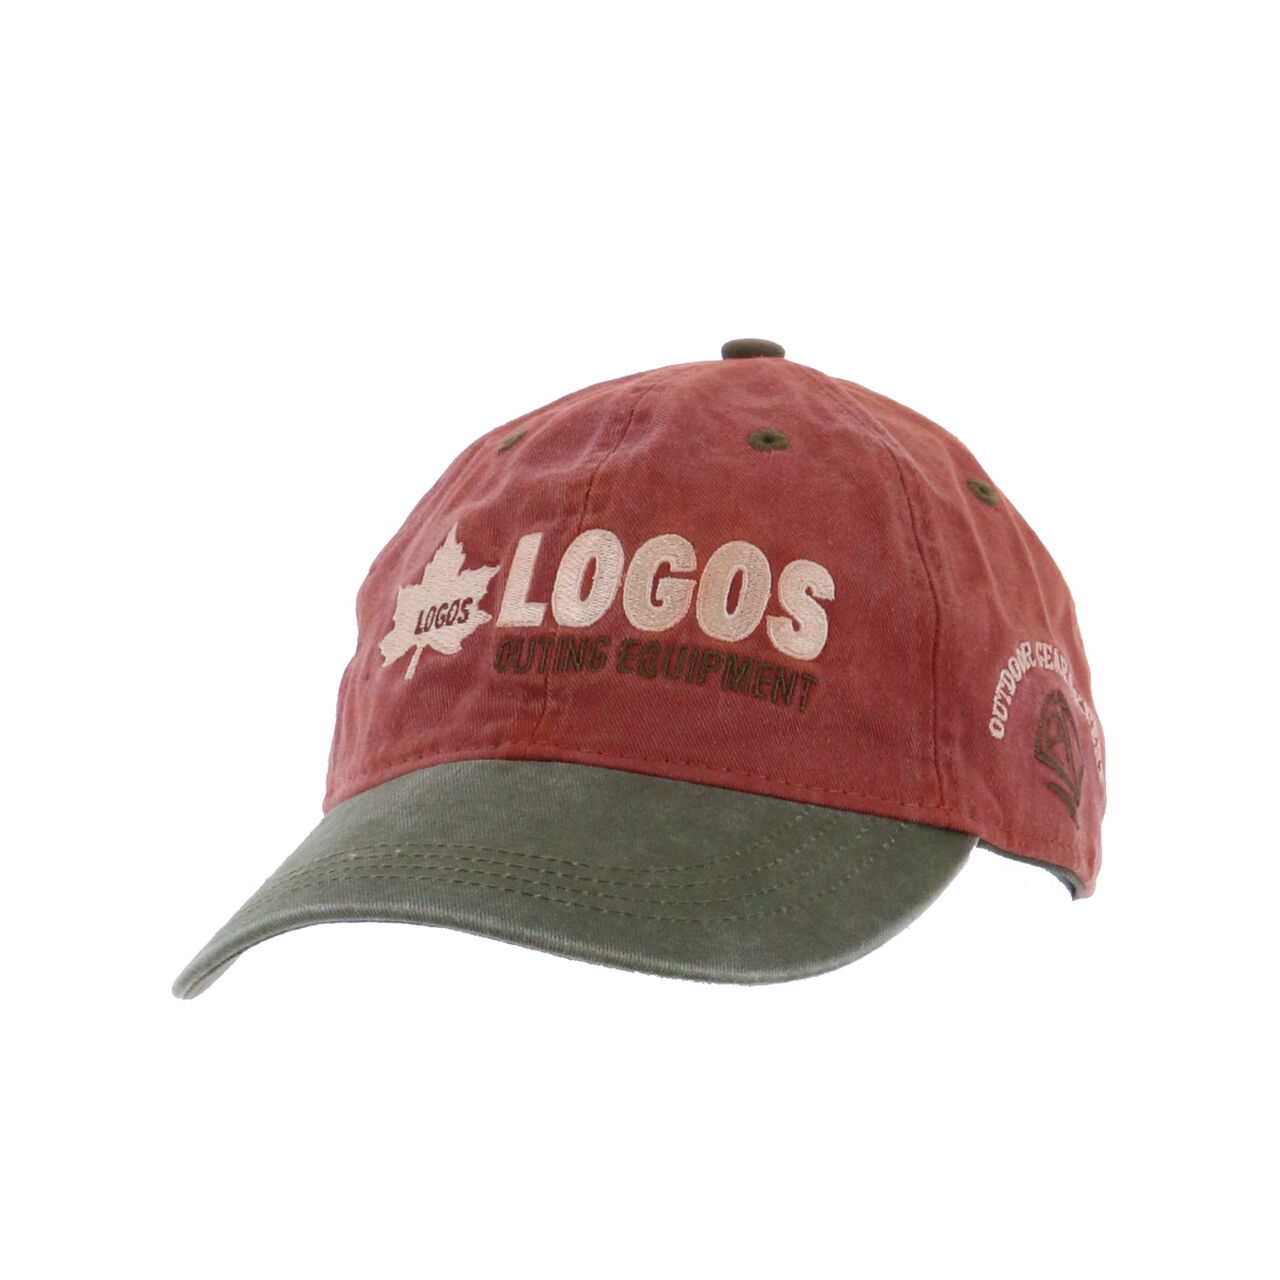 LOGOS CAP,Brown, large image number 2